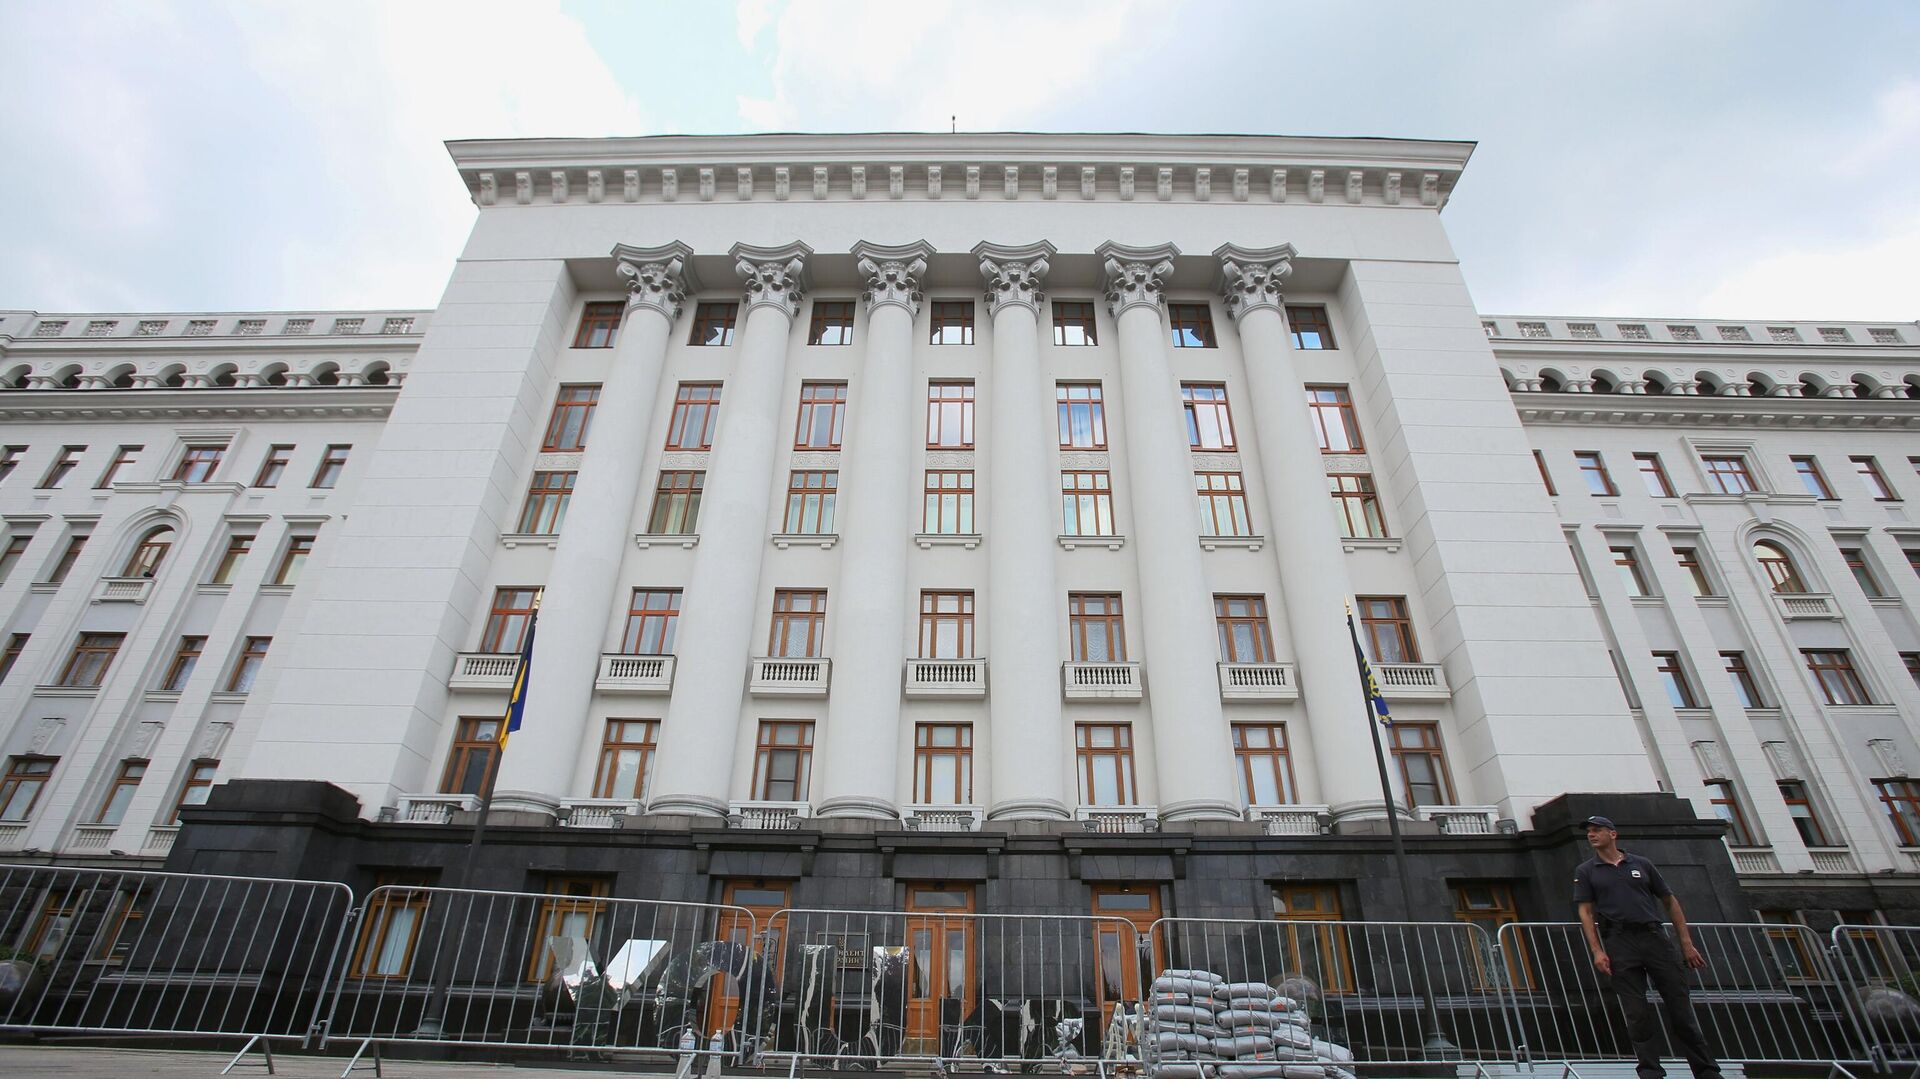 Зграда председништва у Кијеву - Sputnik Србија, 1920, 26.10.2021